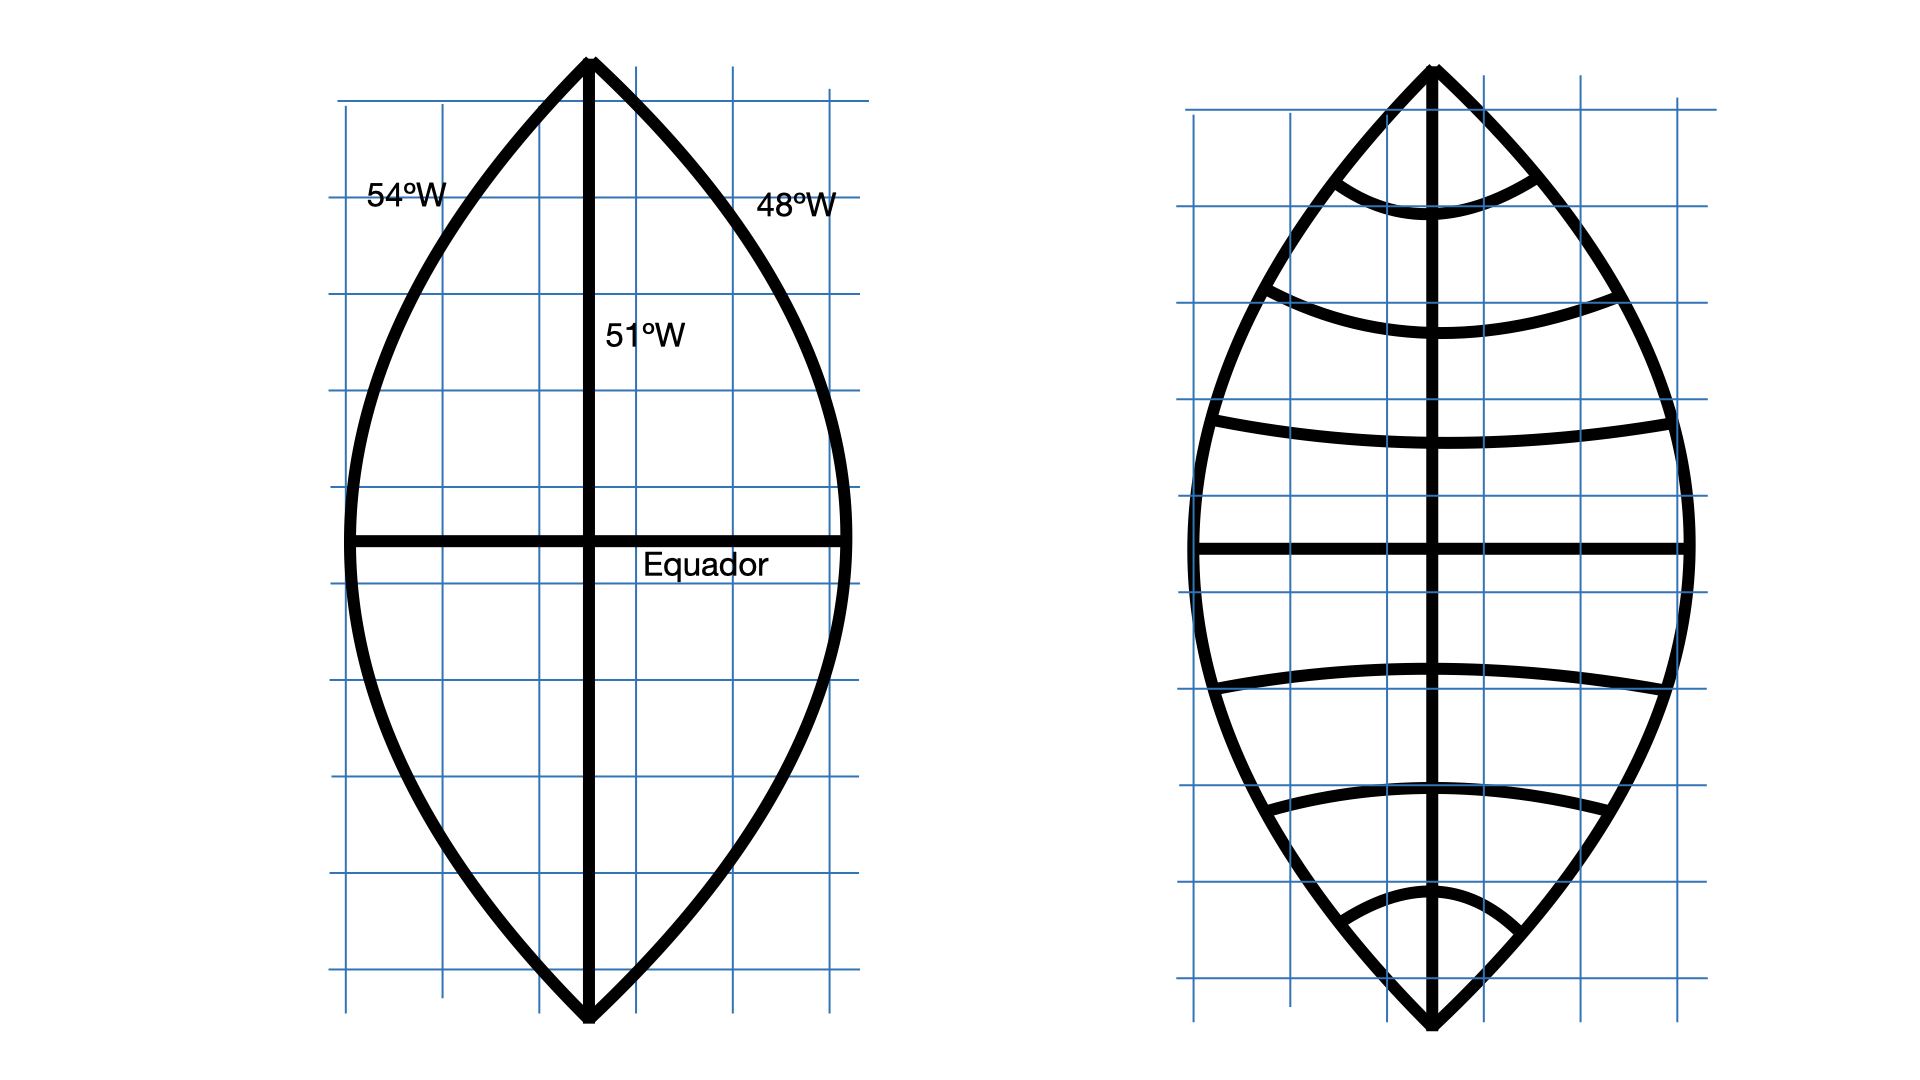 Figura 10: Projeção de um fuso UTM, que é uma fatia do globo terrestre, sobre um plano. À direita, o efeito de distorção dos meridianos e paralelos causados por esta projeção. Efeito exagerado para fins didáticos (o fuso UTM tem apenas 6 graus de largura).